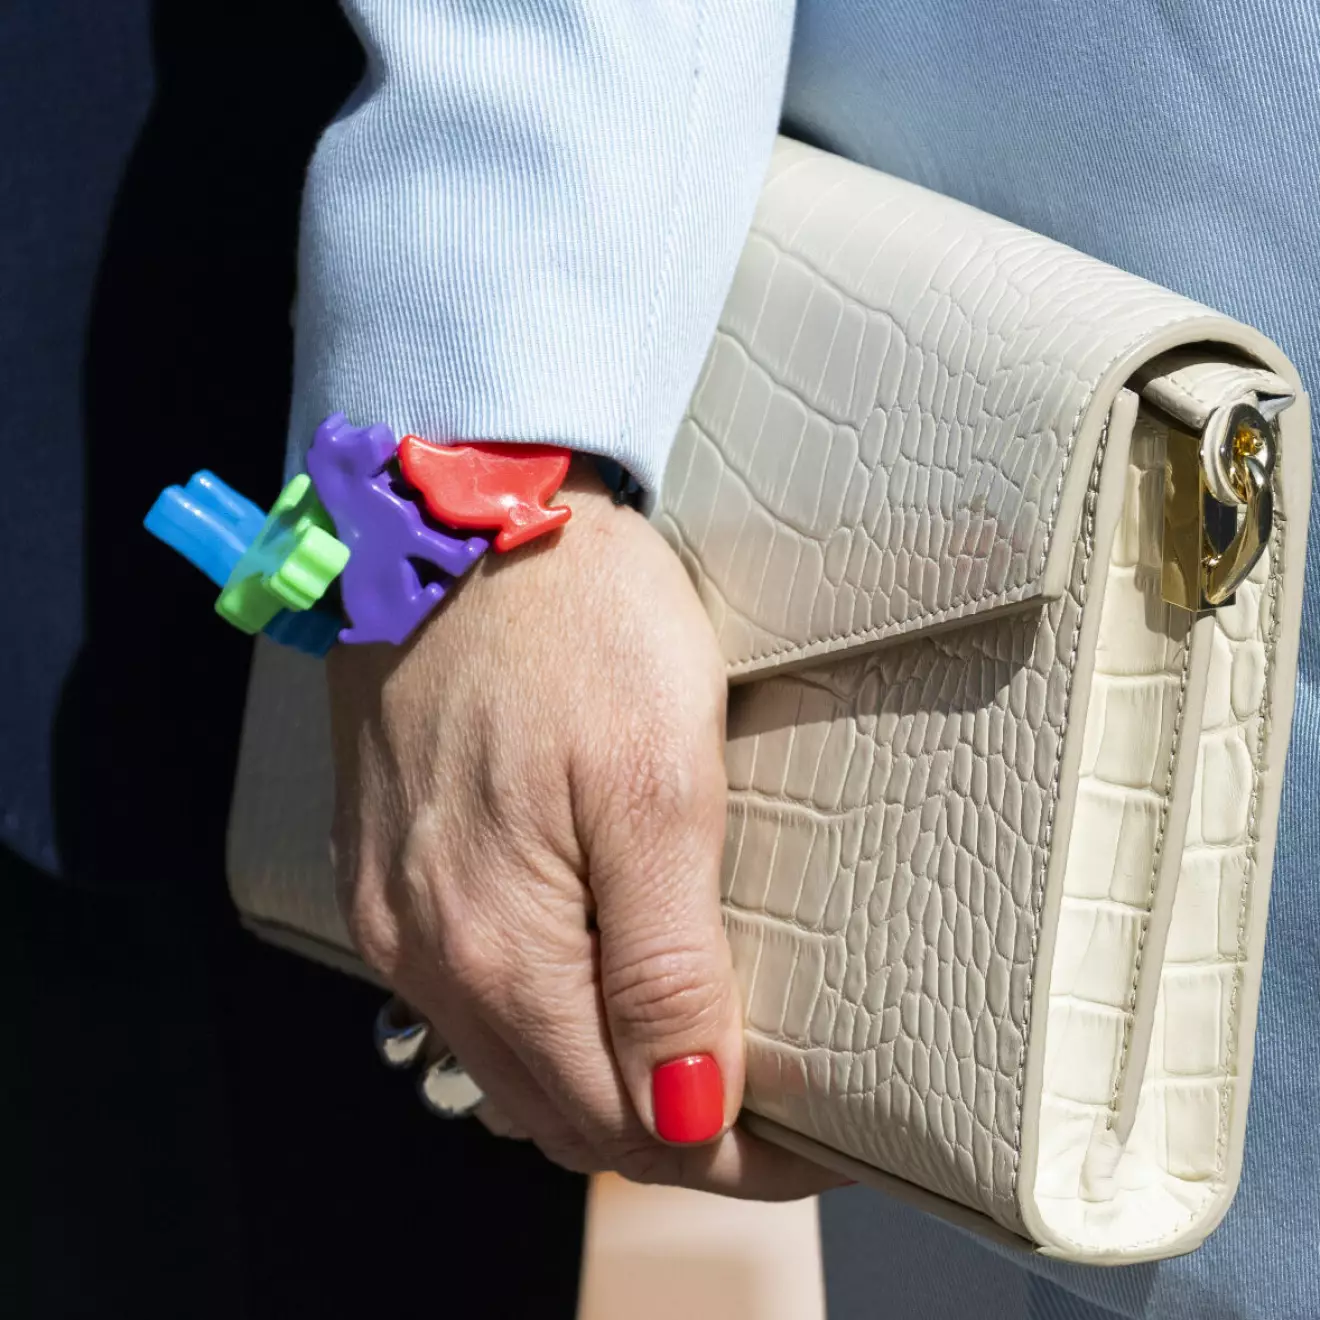 Prinsessan Sofias armband med djur i plast